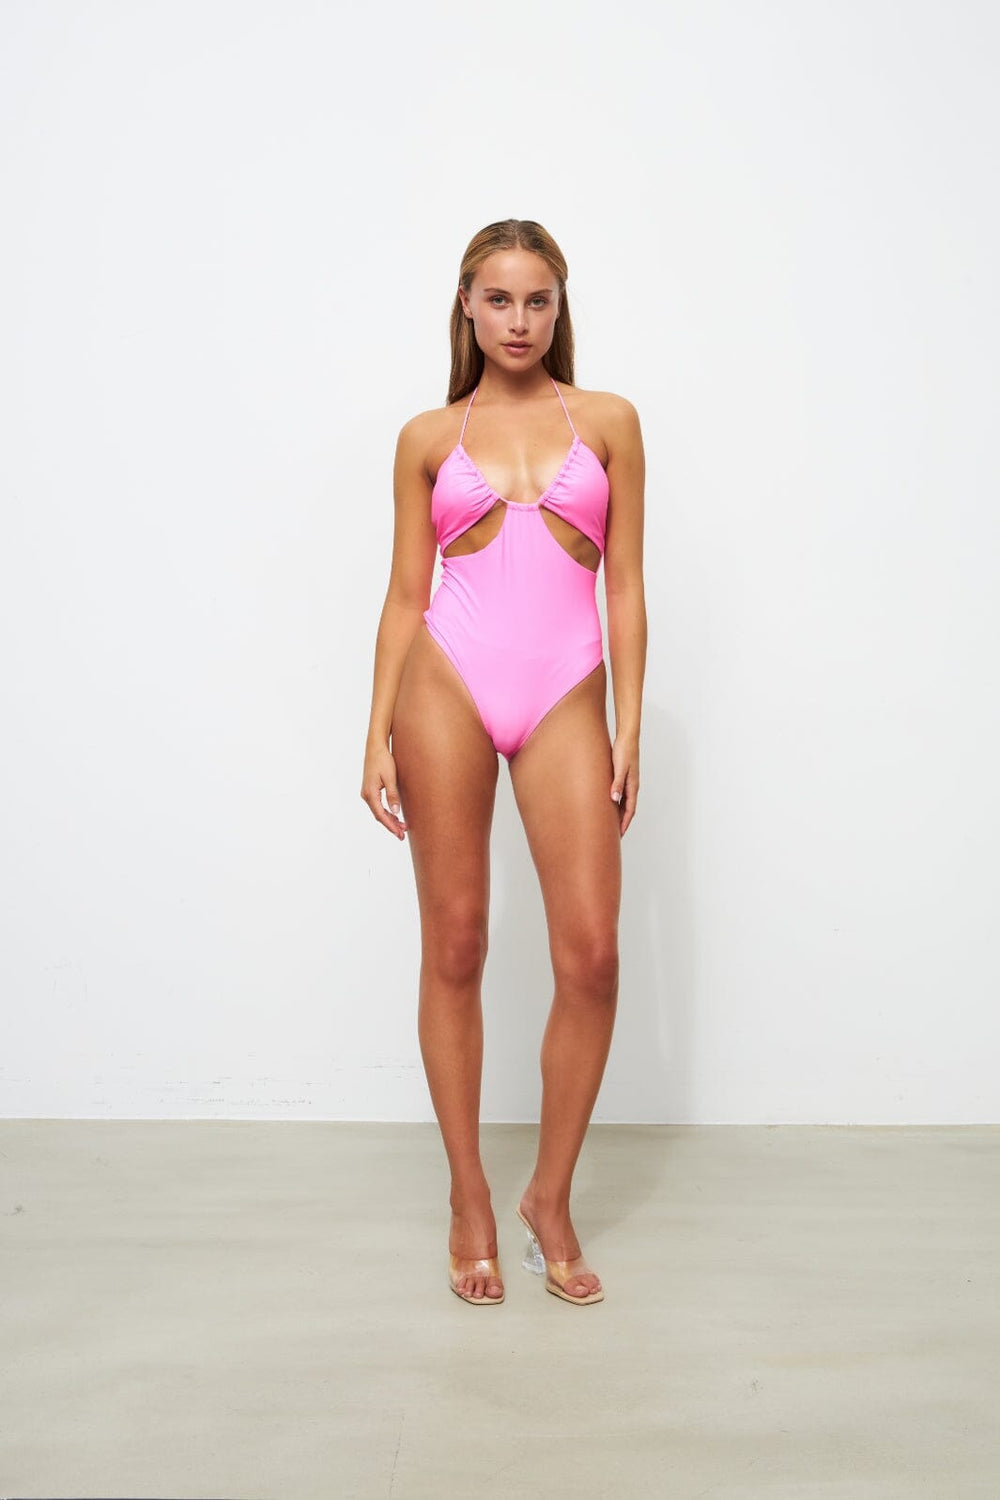 Cras - Inescras Swimsuit - Pink 906C Badedragter 